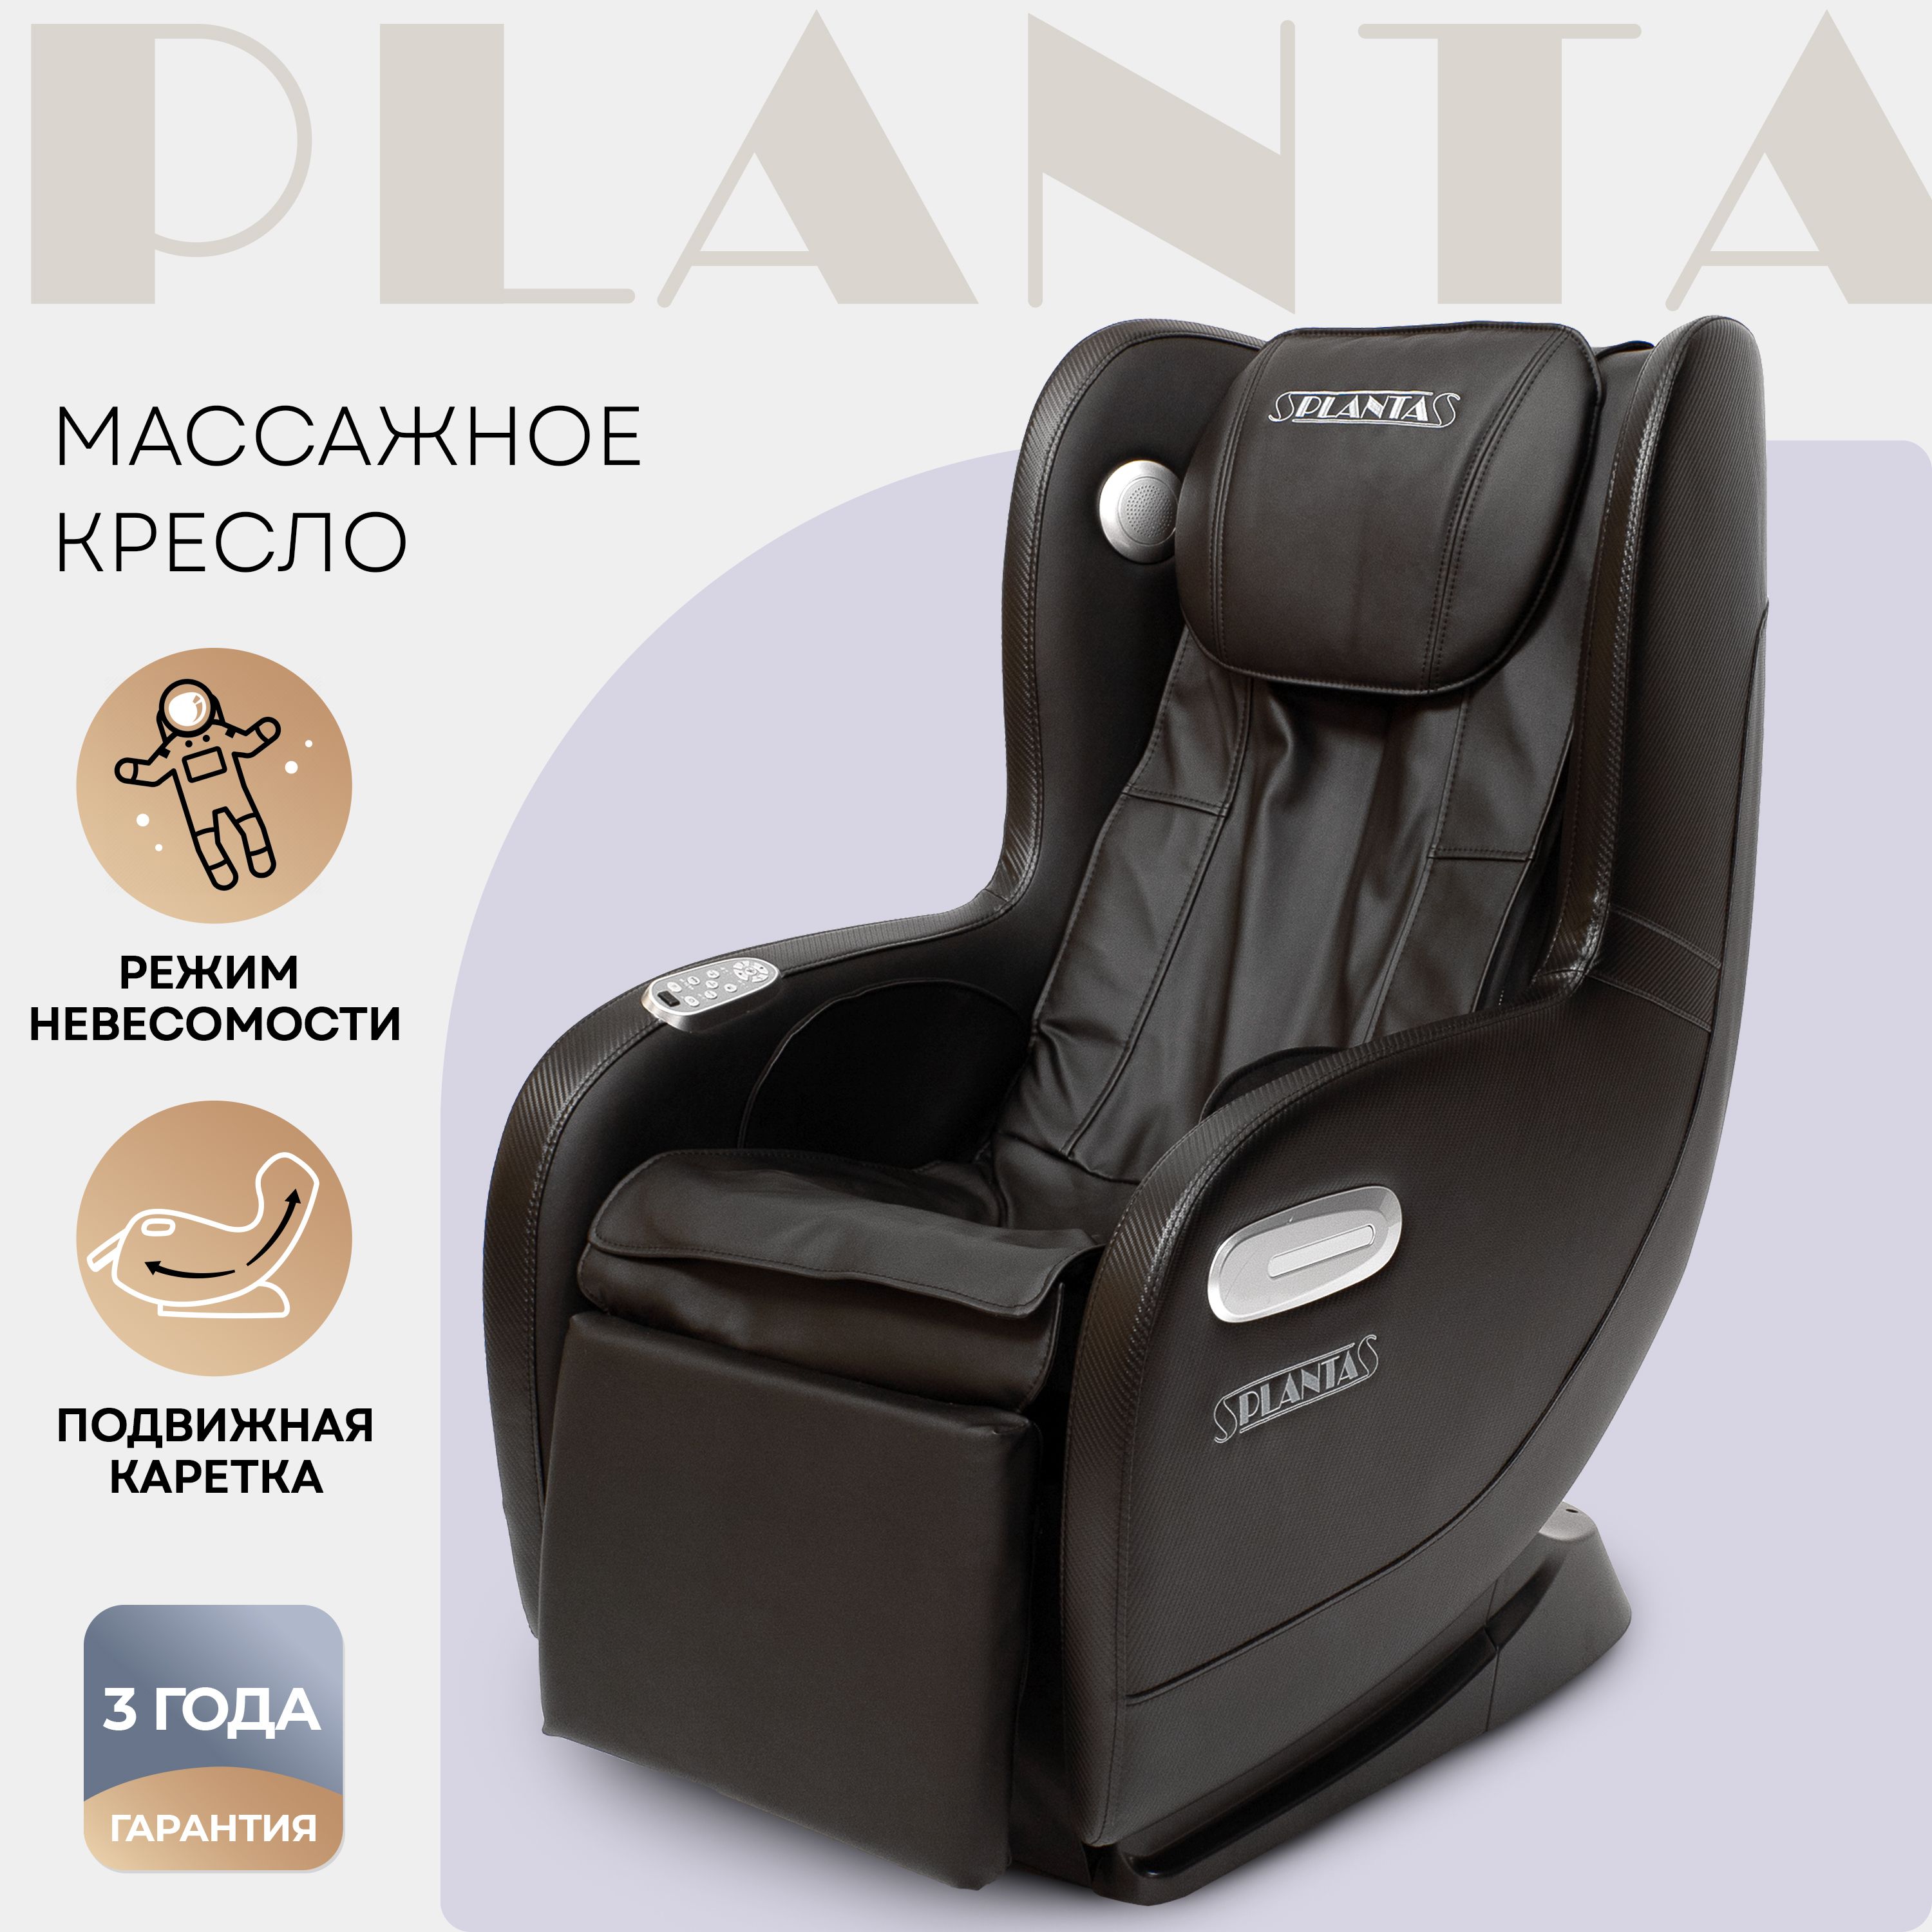 Массажное кресло planta. SL a601 модель IREST. Кресло с имитацией позвоночника. Rk8900s. Massager Chair rk1913-1.